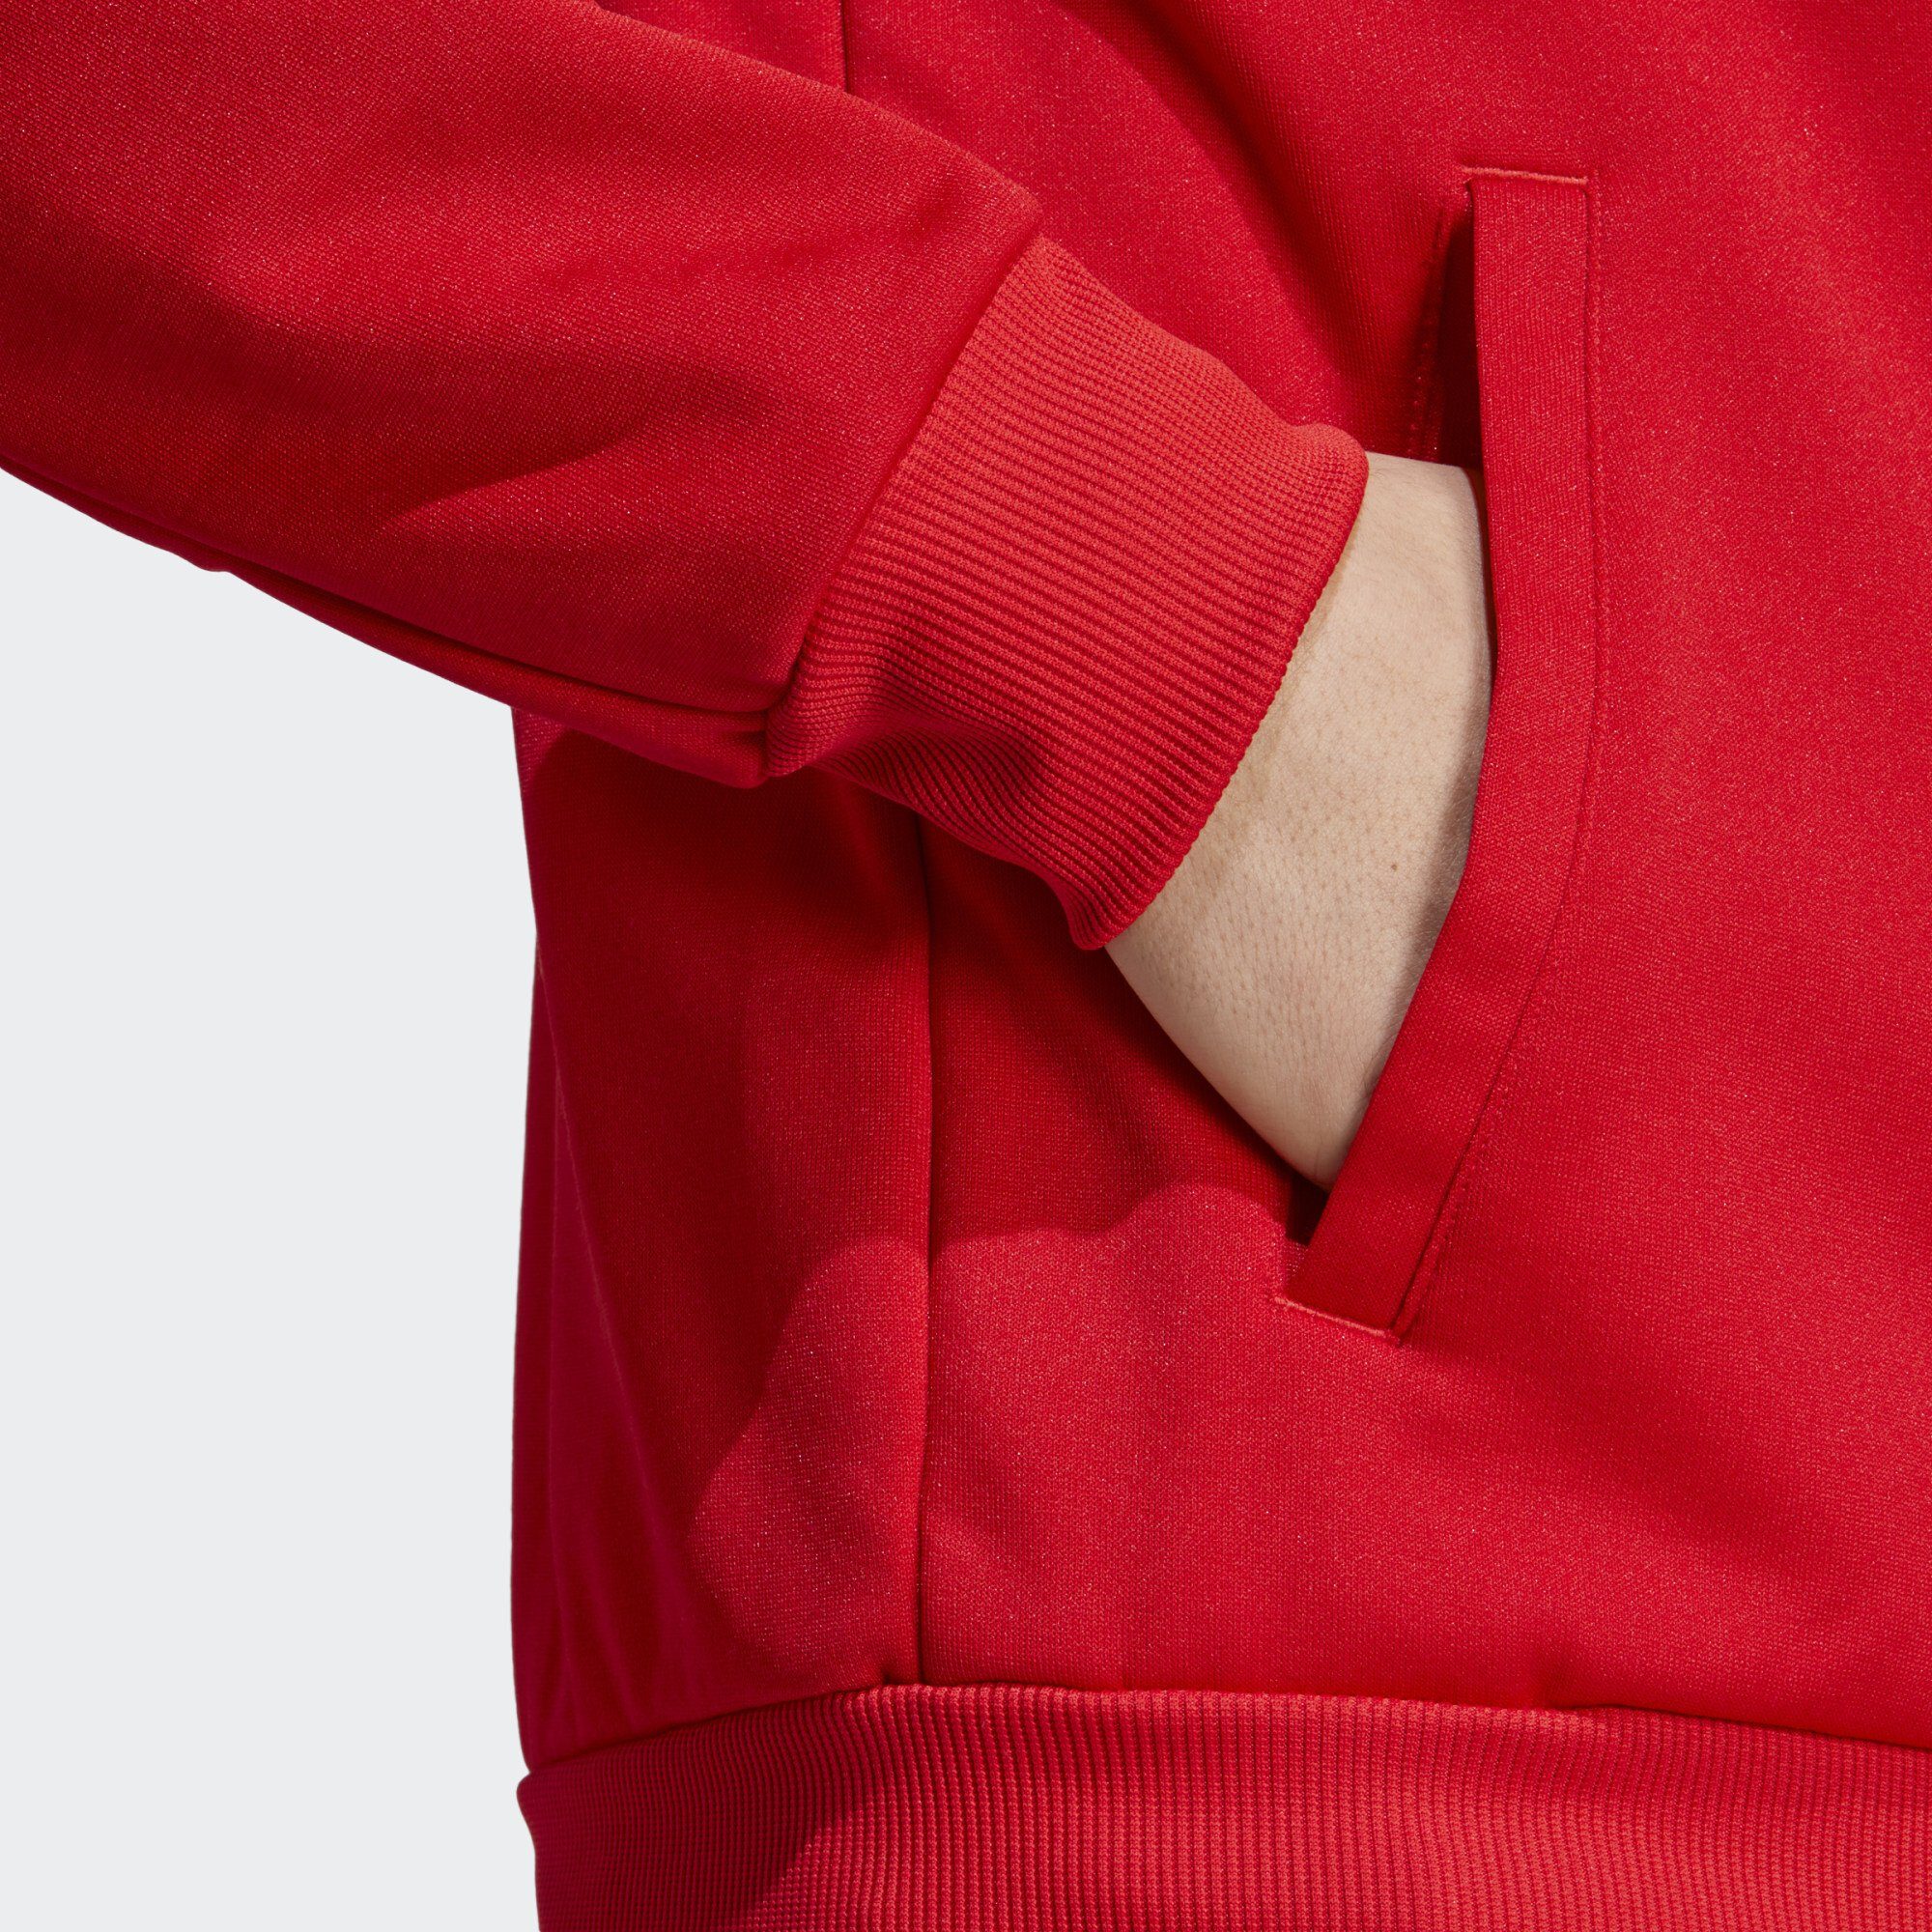 Scarlet SUIT-UP Better TRAININGSJACKE adidas TIRO Funktionsjacke Sportswear